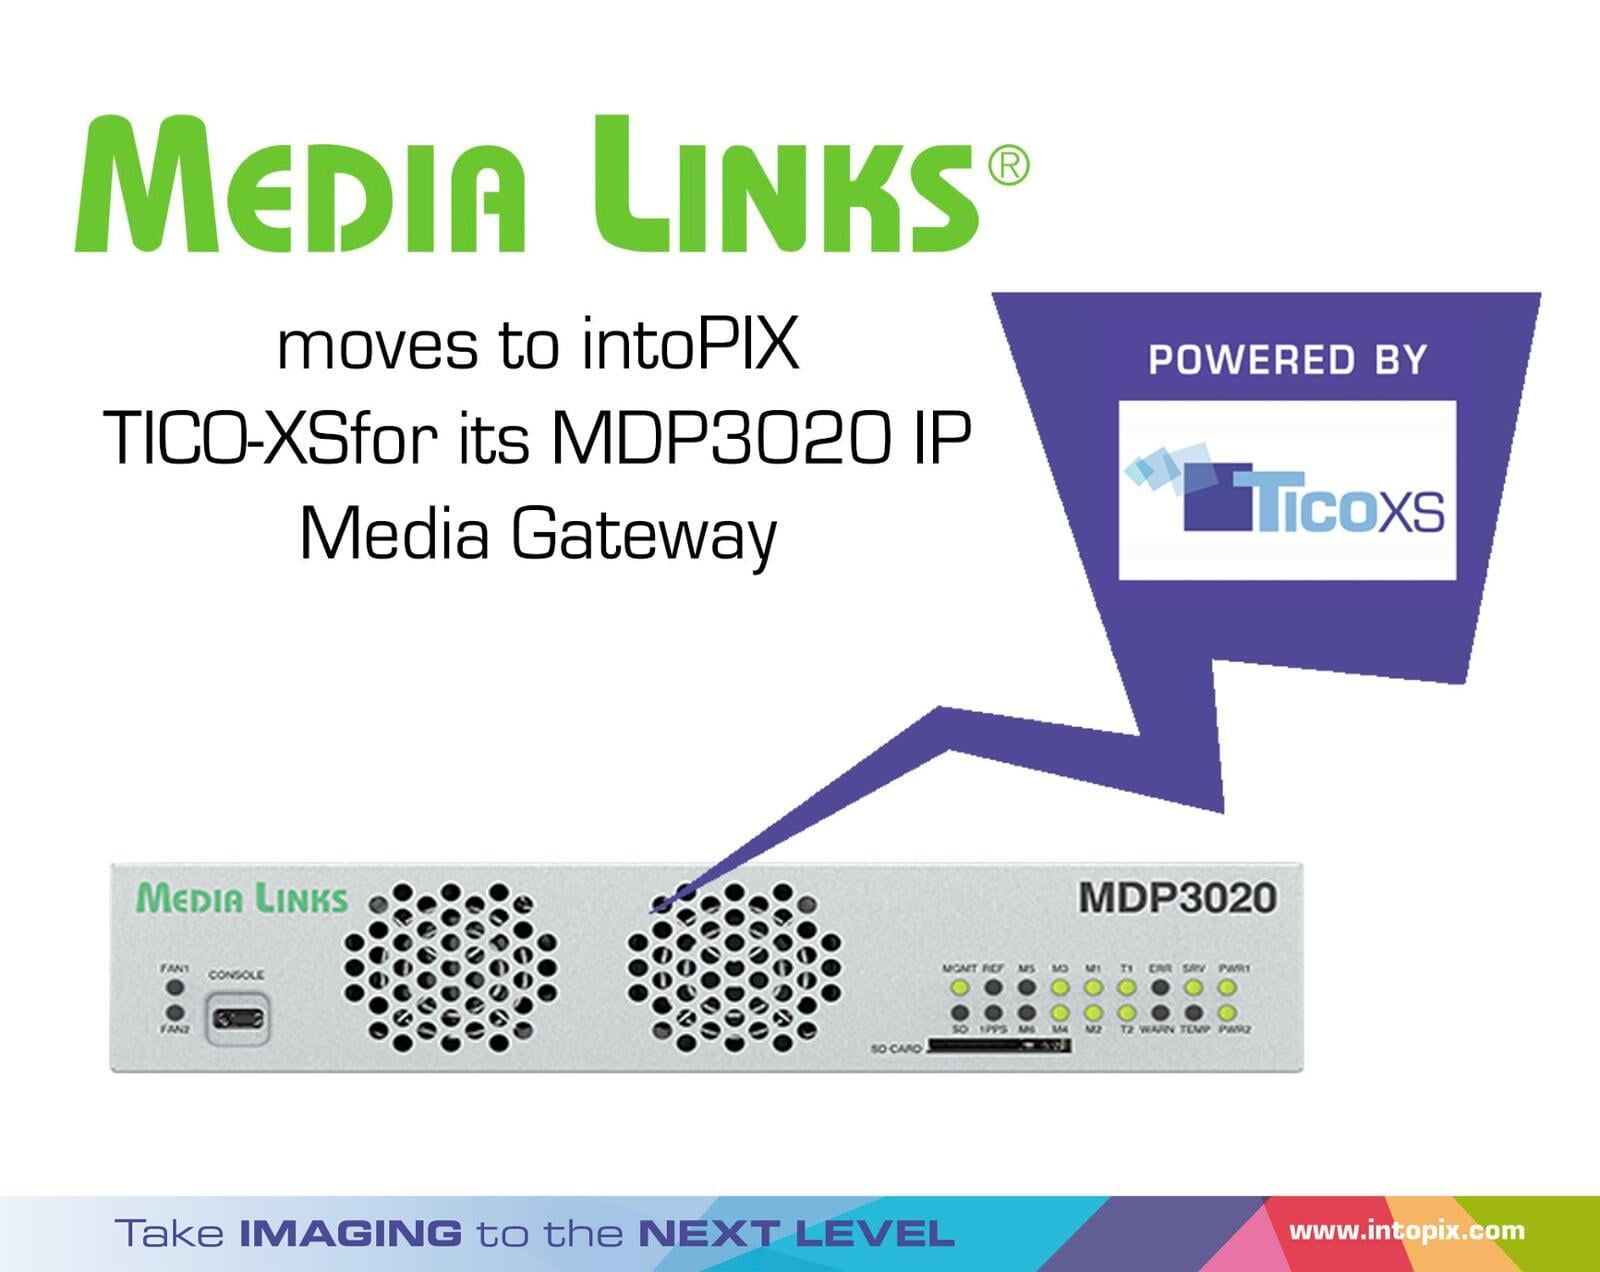 Media Links社がMDP3020 IPメディアゲートウェイのためにintoPIXのTICO-XSに移行                                